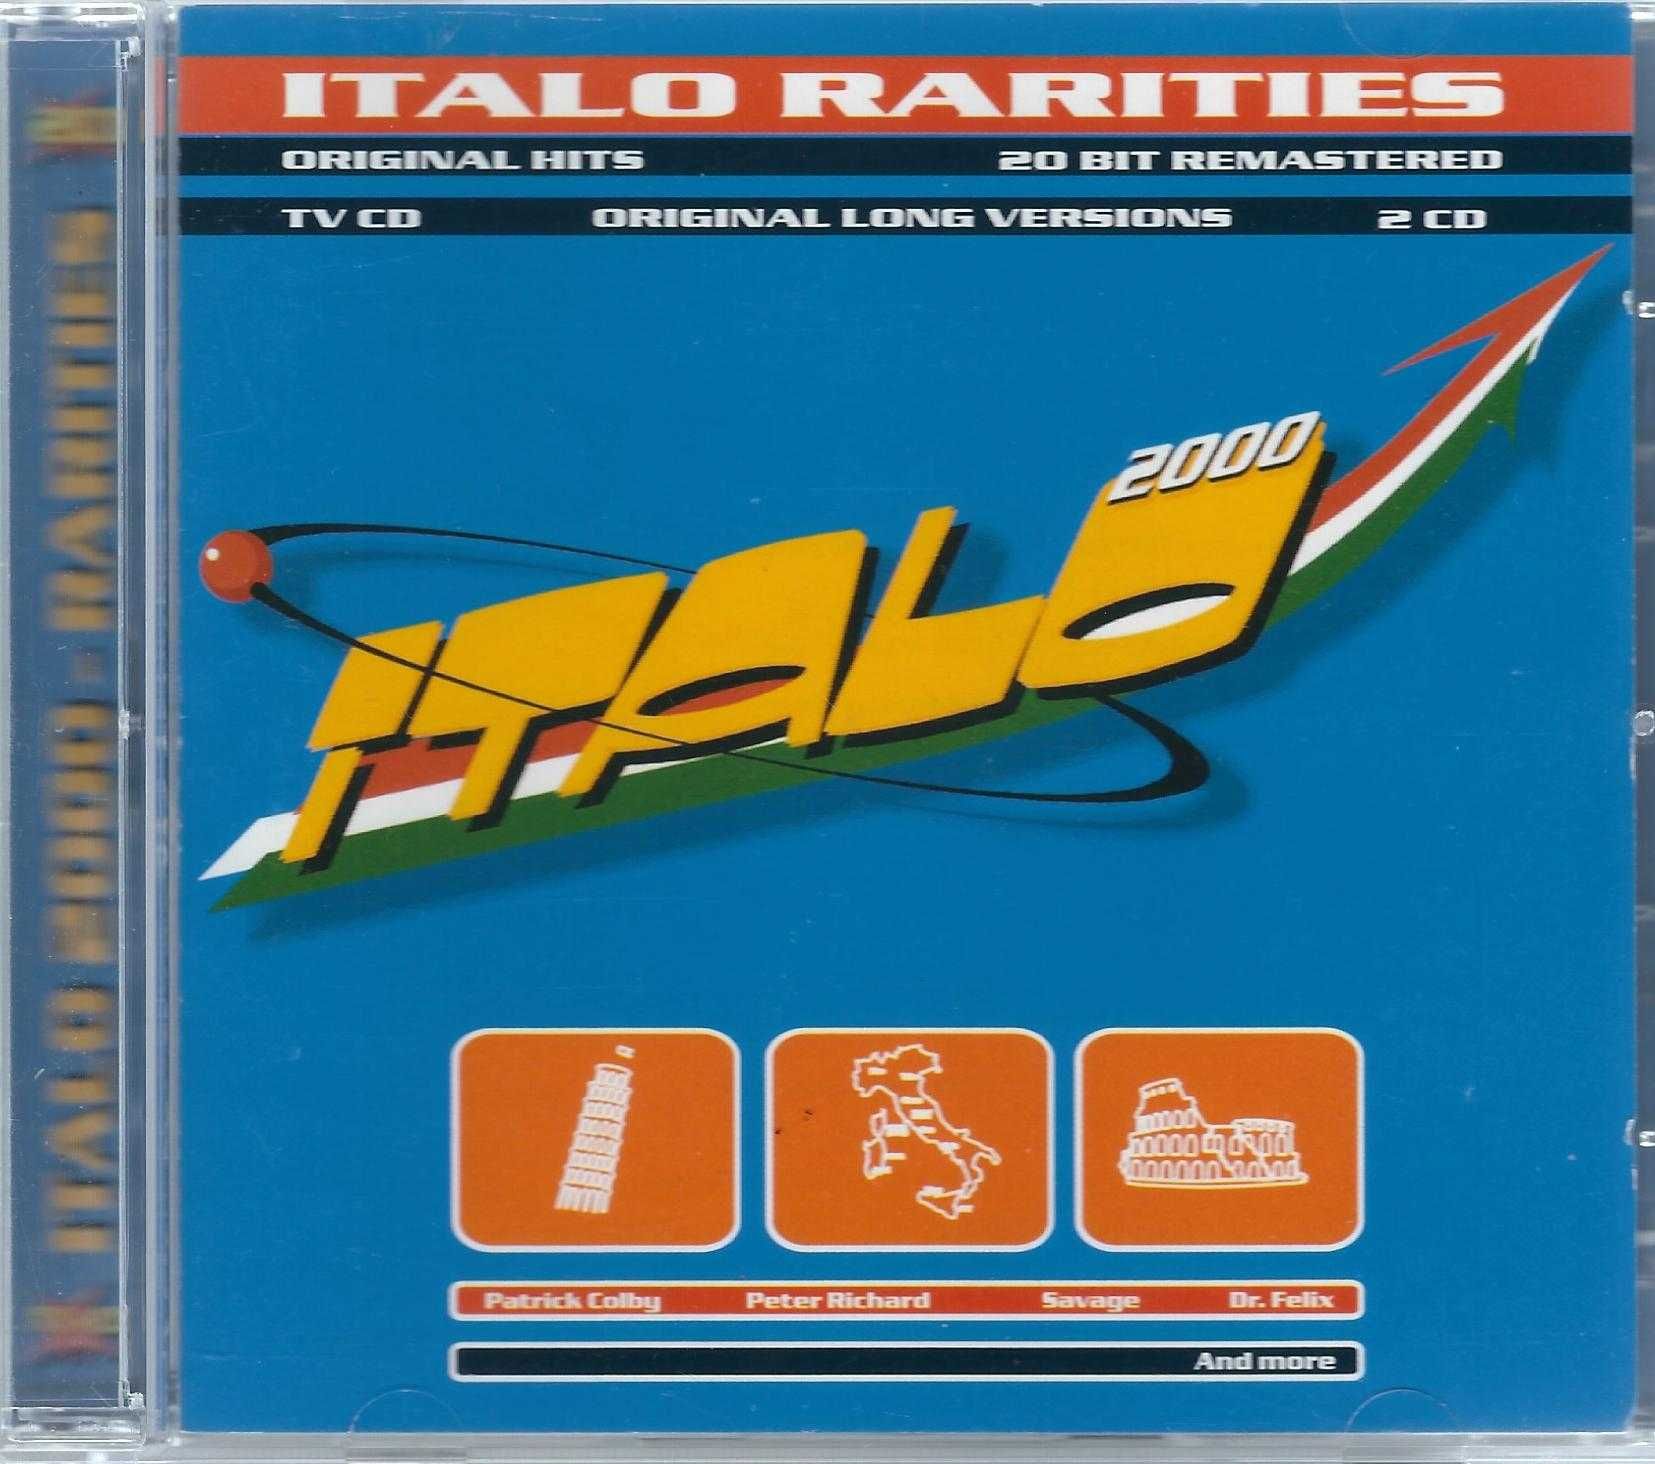 2 CD VA - Italo 2000 - Italo Rarities (1998) (ZYX Music)